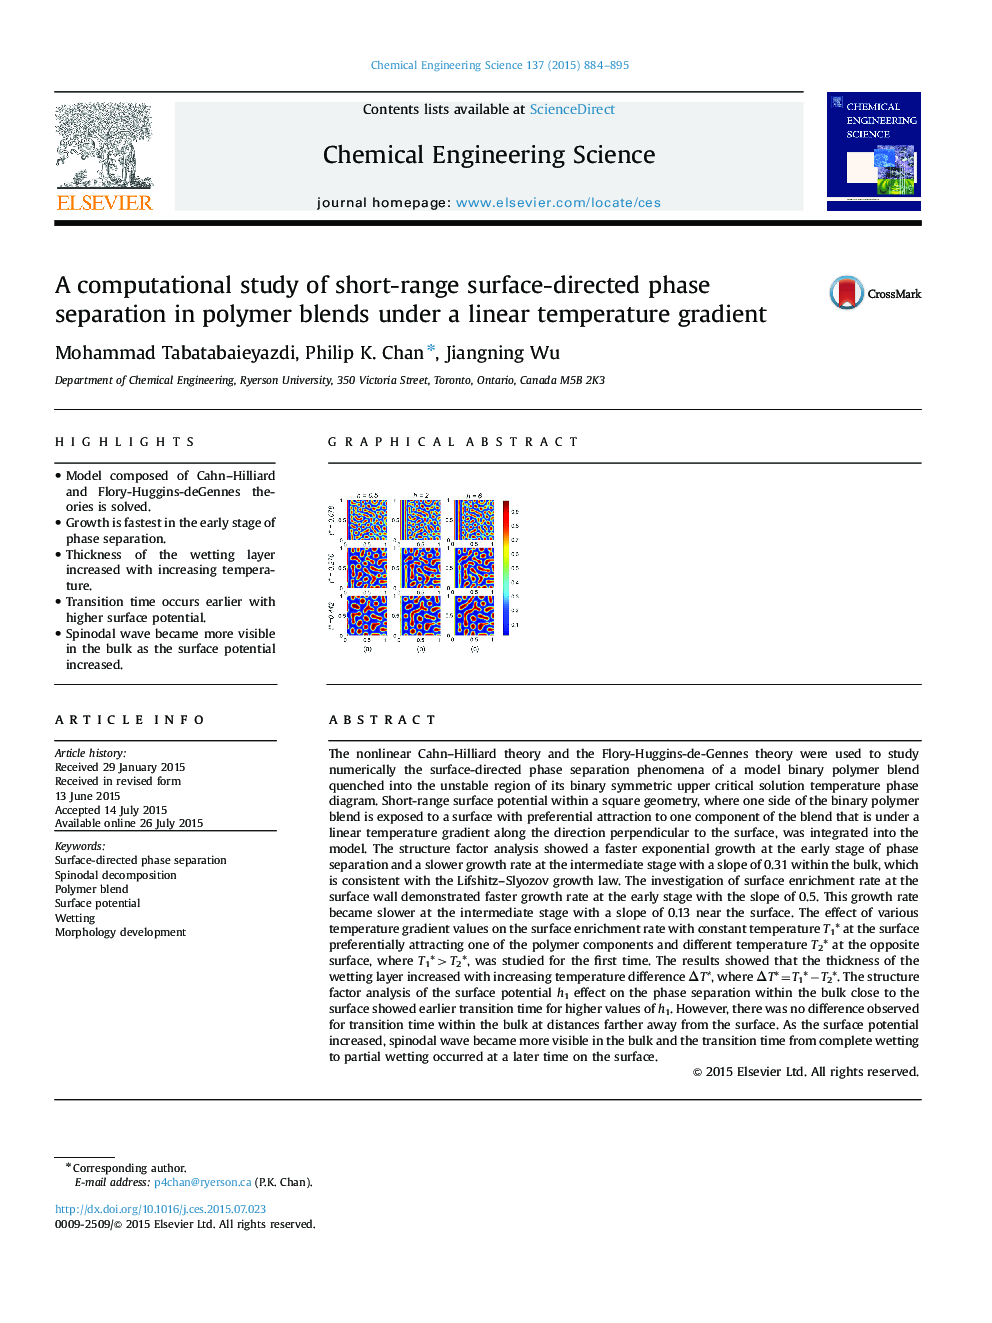 یک مطالعه محاسباتی در مورد جداسازی فاز کوتاه سطحی در مخلوط پلیمر تحت یک گرادیان خطی 